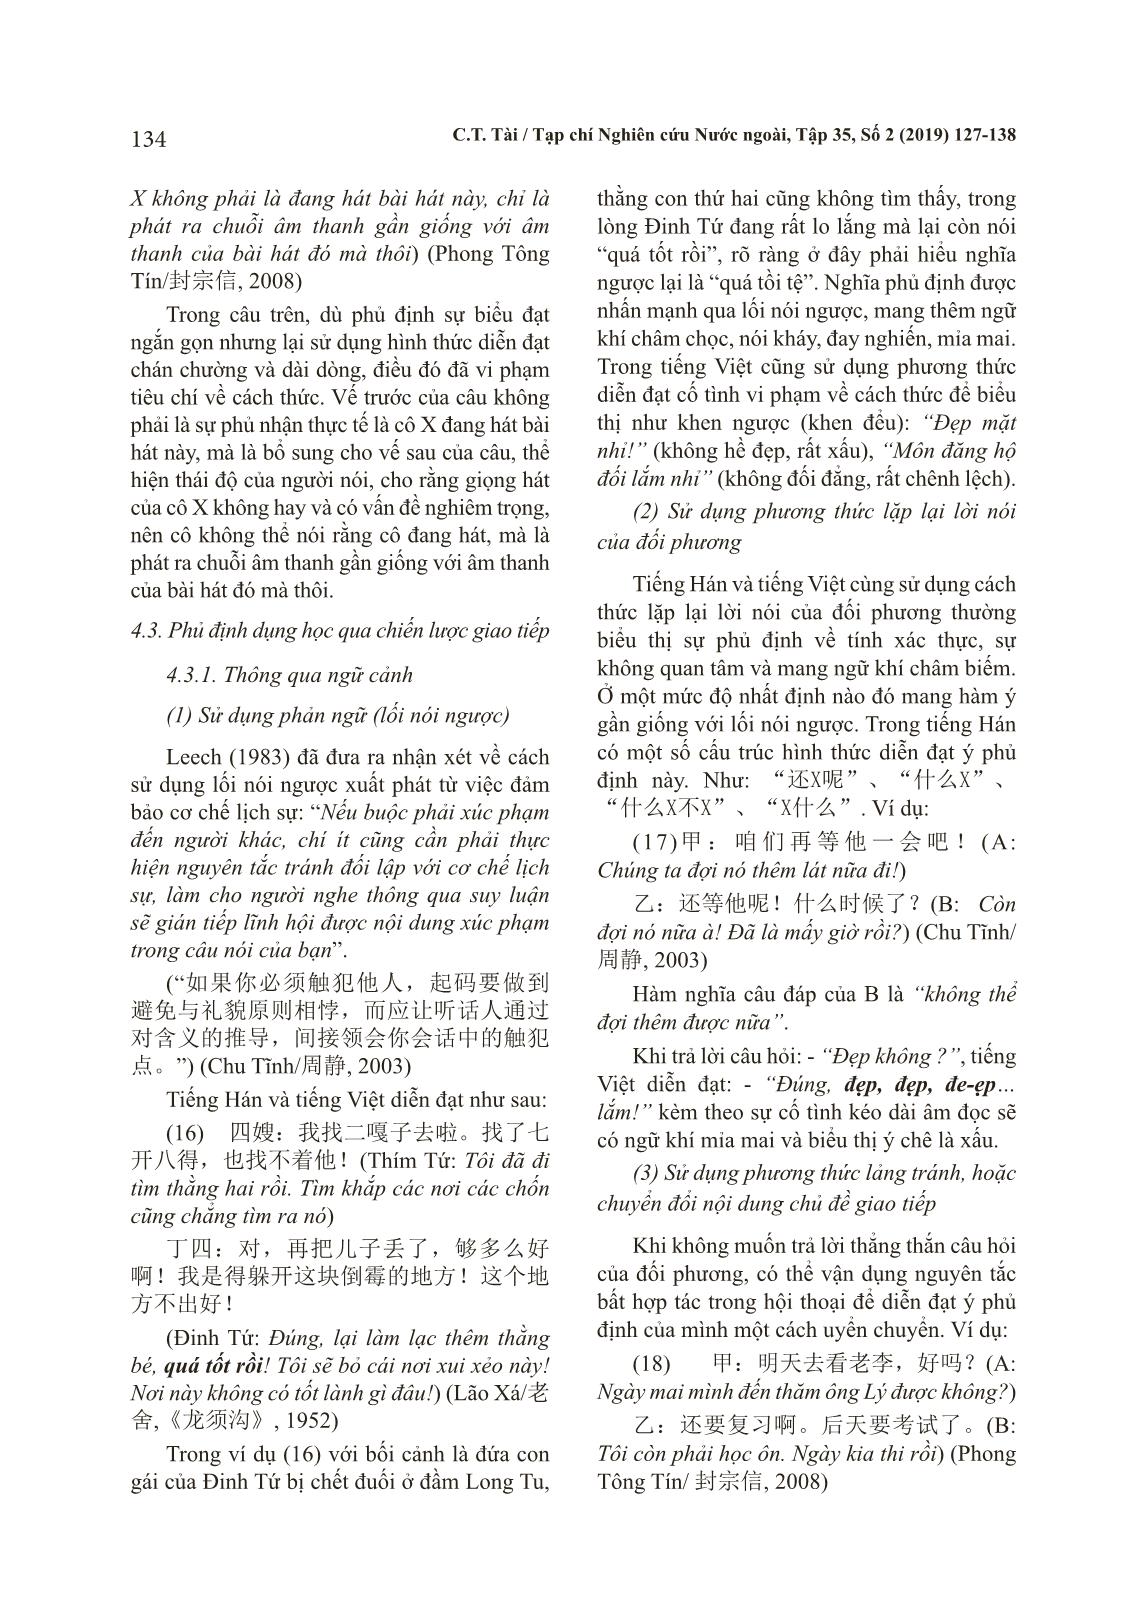 Bàn về phương thức phủ định dụng học trong tiếng Hán và tiếng Việt trang 8